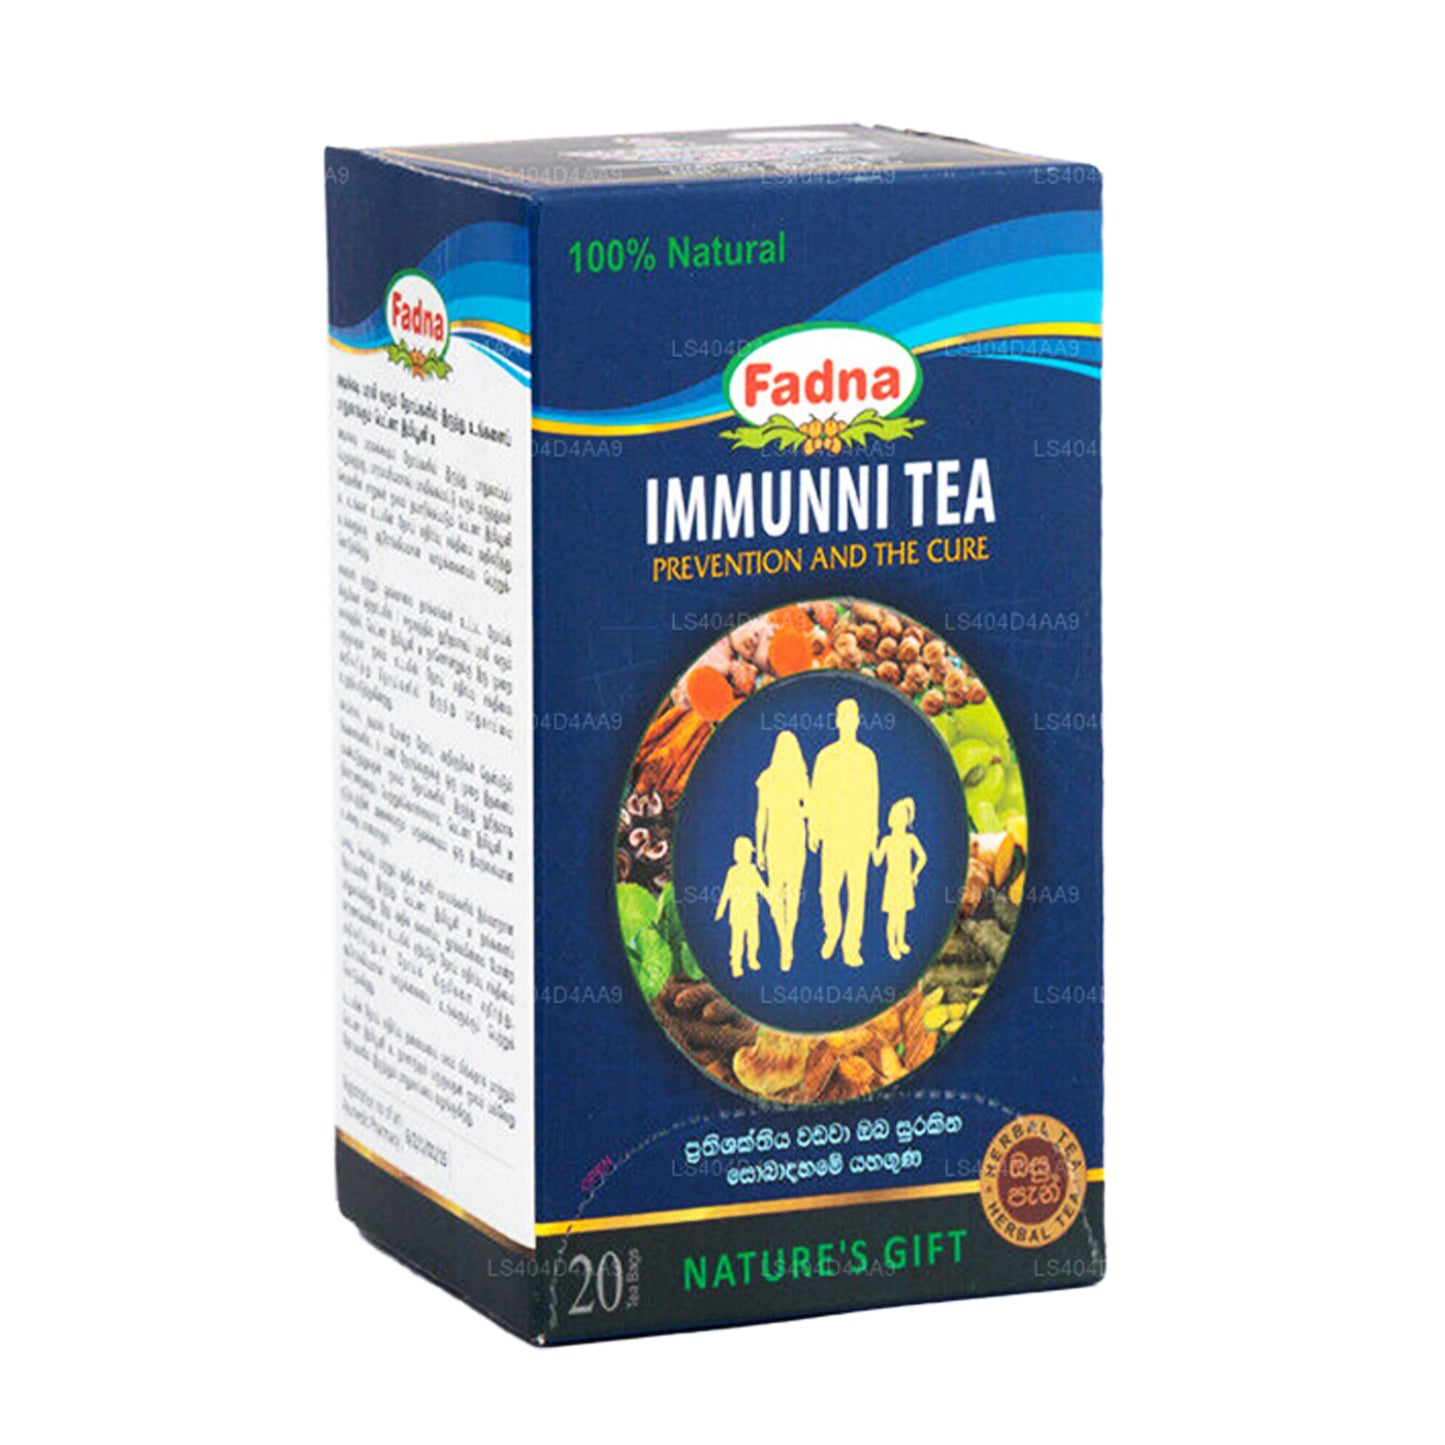 Té Fadna Immunni (40 g), 20 bolsitas de té